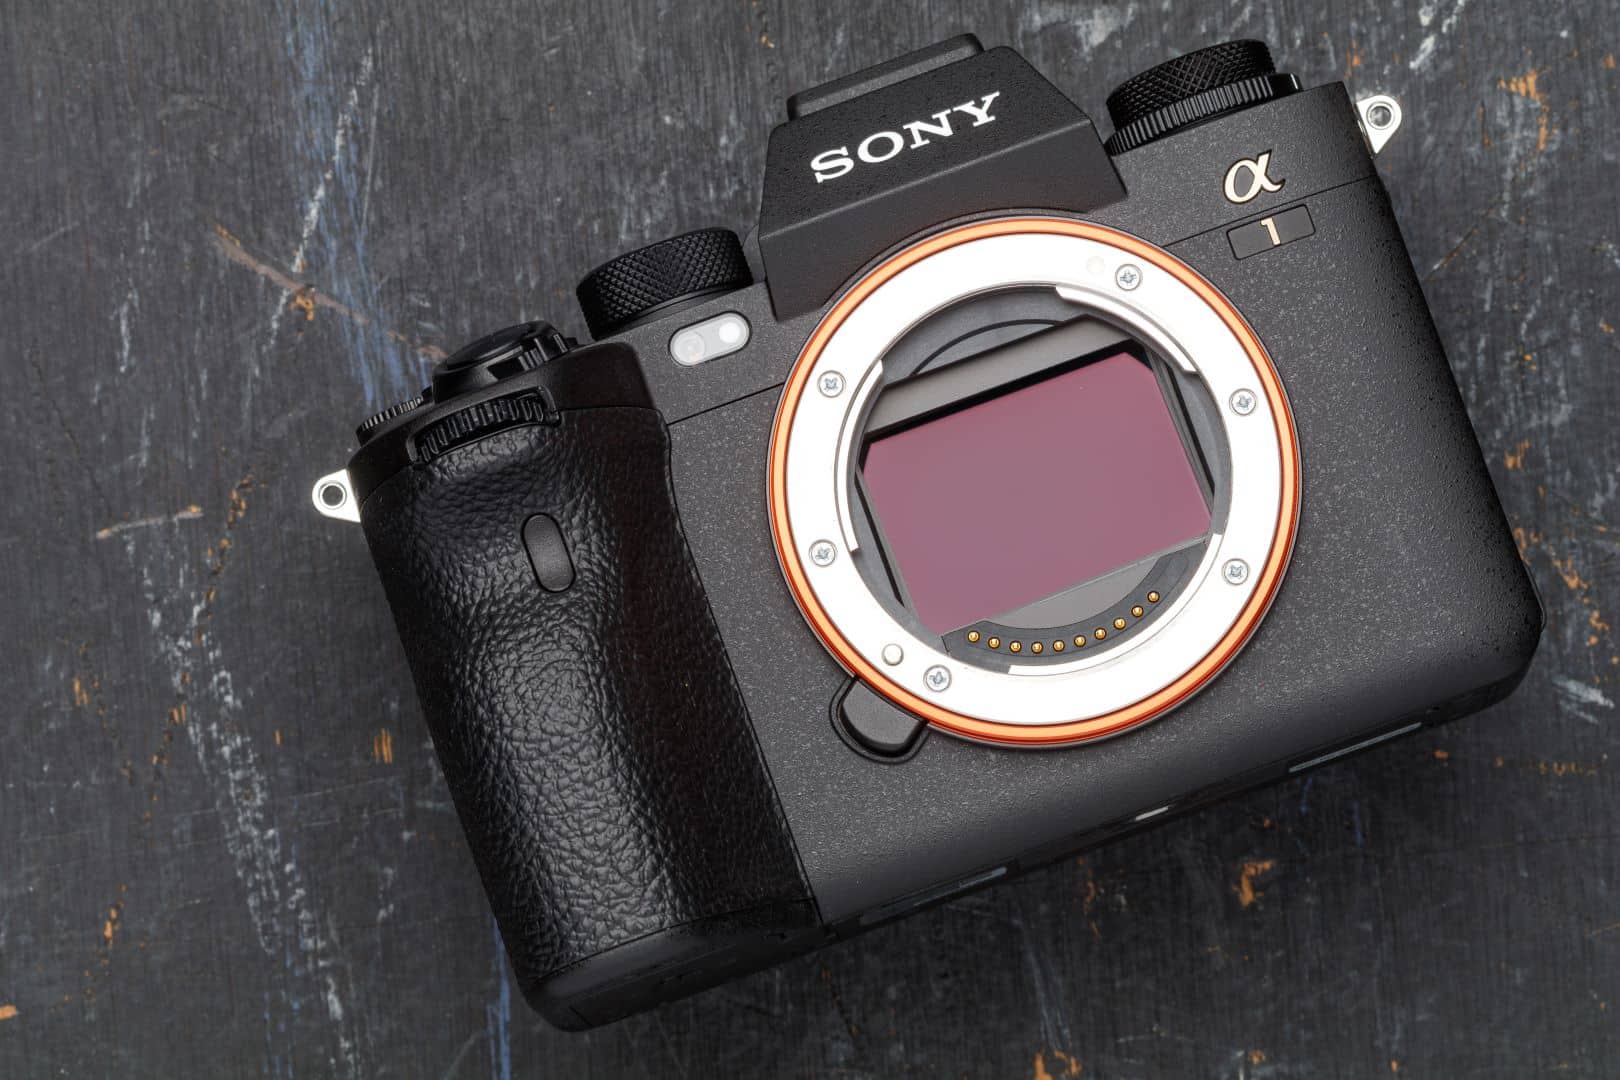 Sony tung cập nhật cho máy ảnh Alpha 1 với khả năng quay 8K 4:2:2 10-bit và chụp Lossless RAW